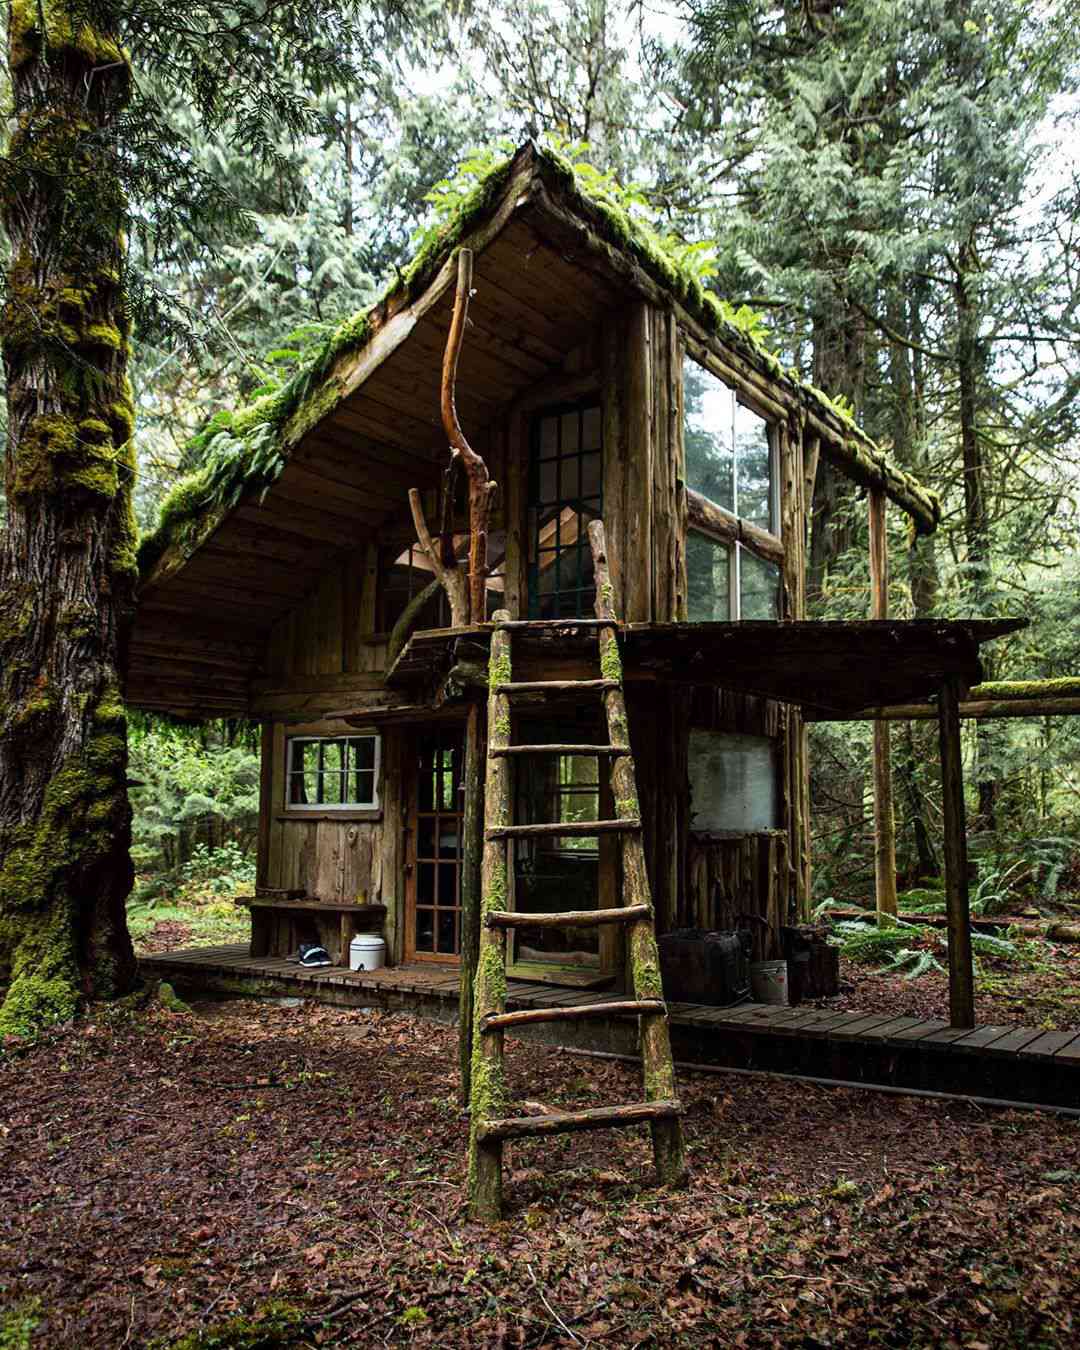 Casa na árvore rústica com escada de madeira do lado de fora